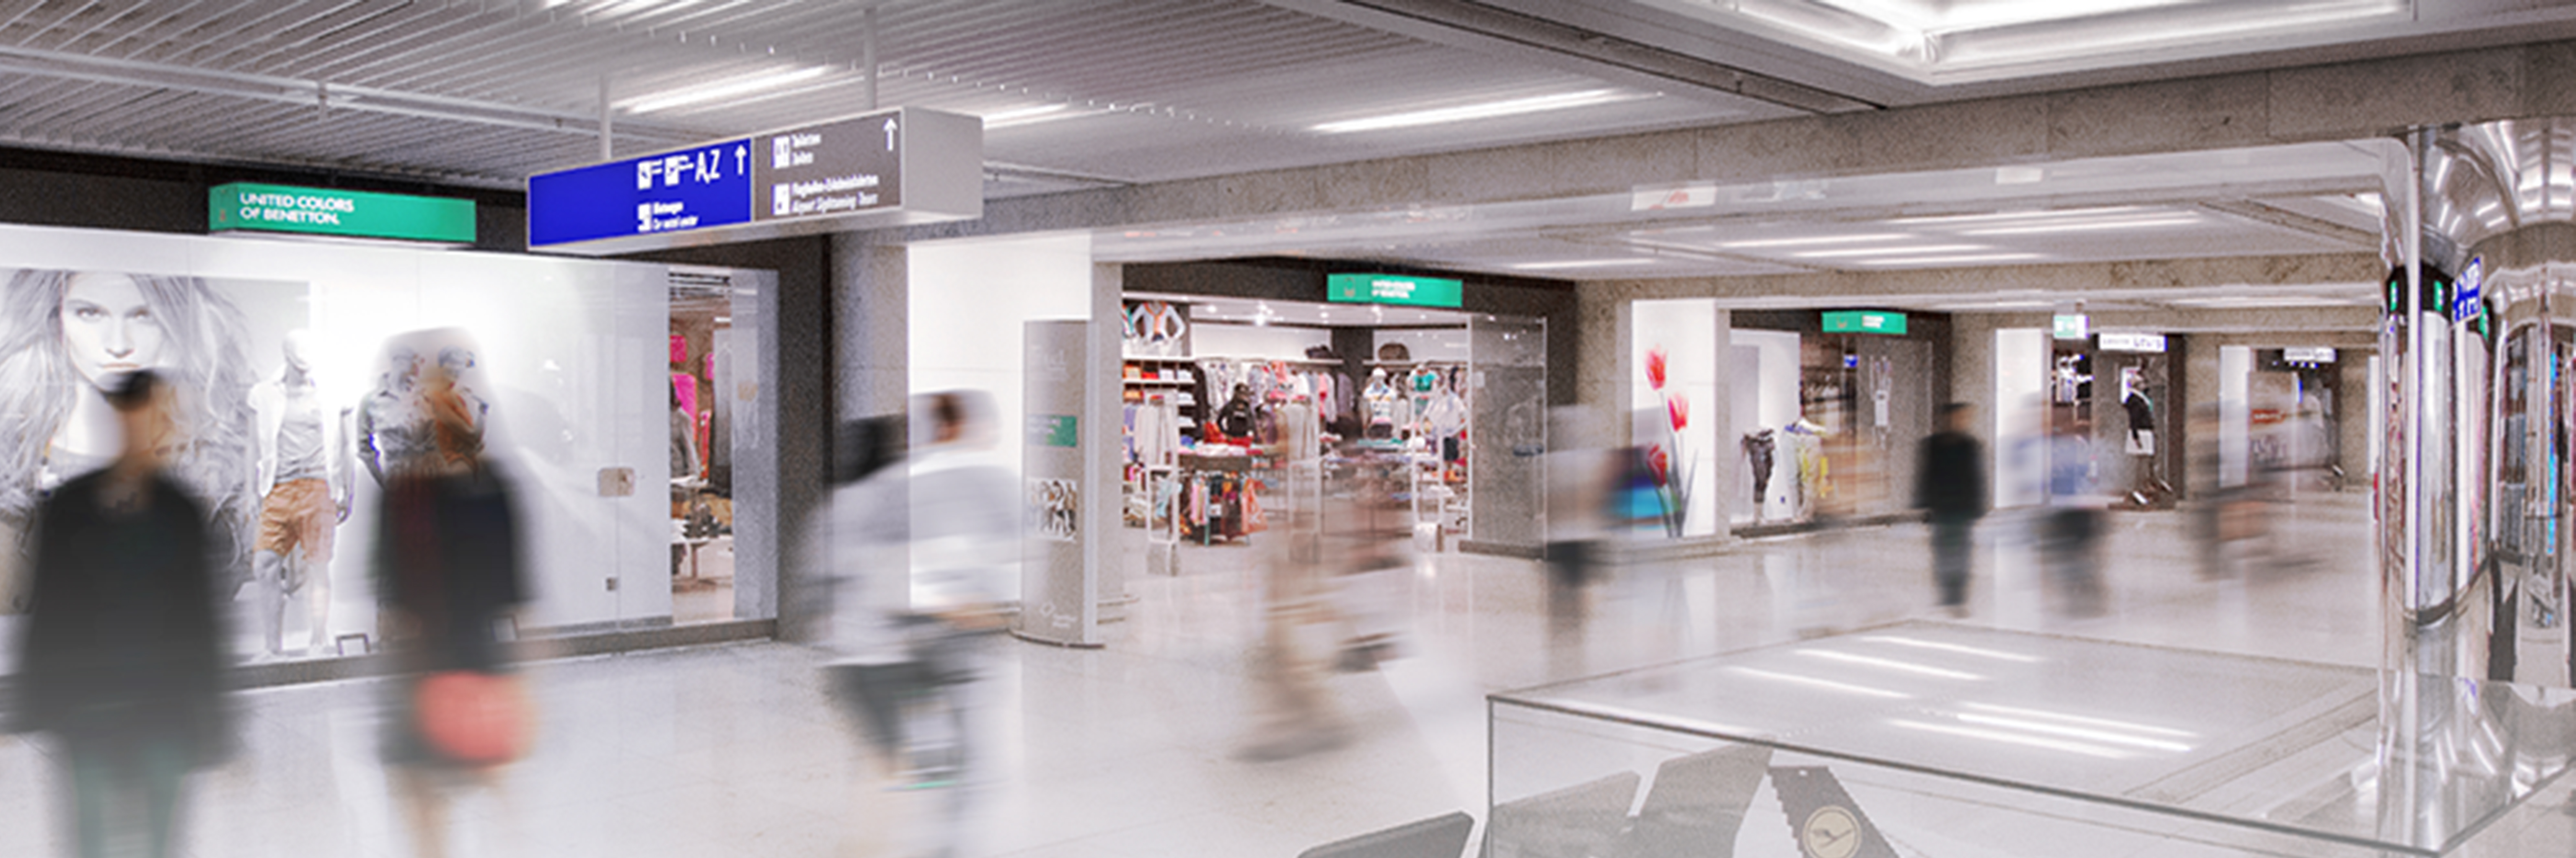 Sinalização digital chega ao aeroporto de Frankfurt para facilitar a viagem dos passageiros